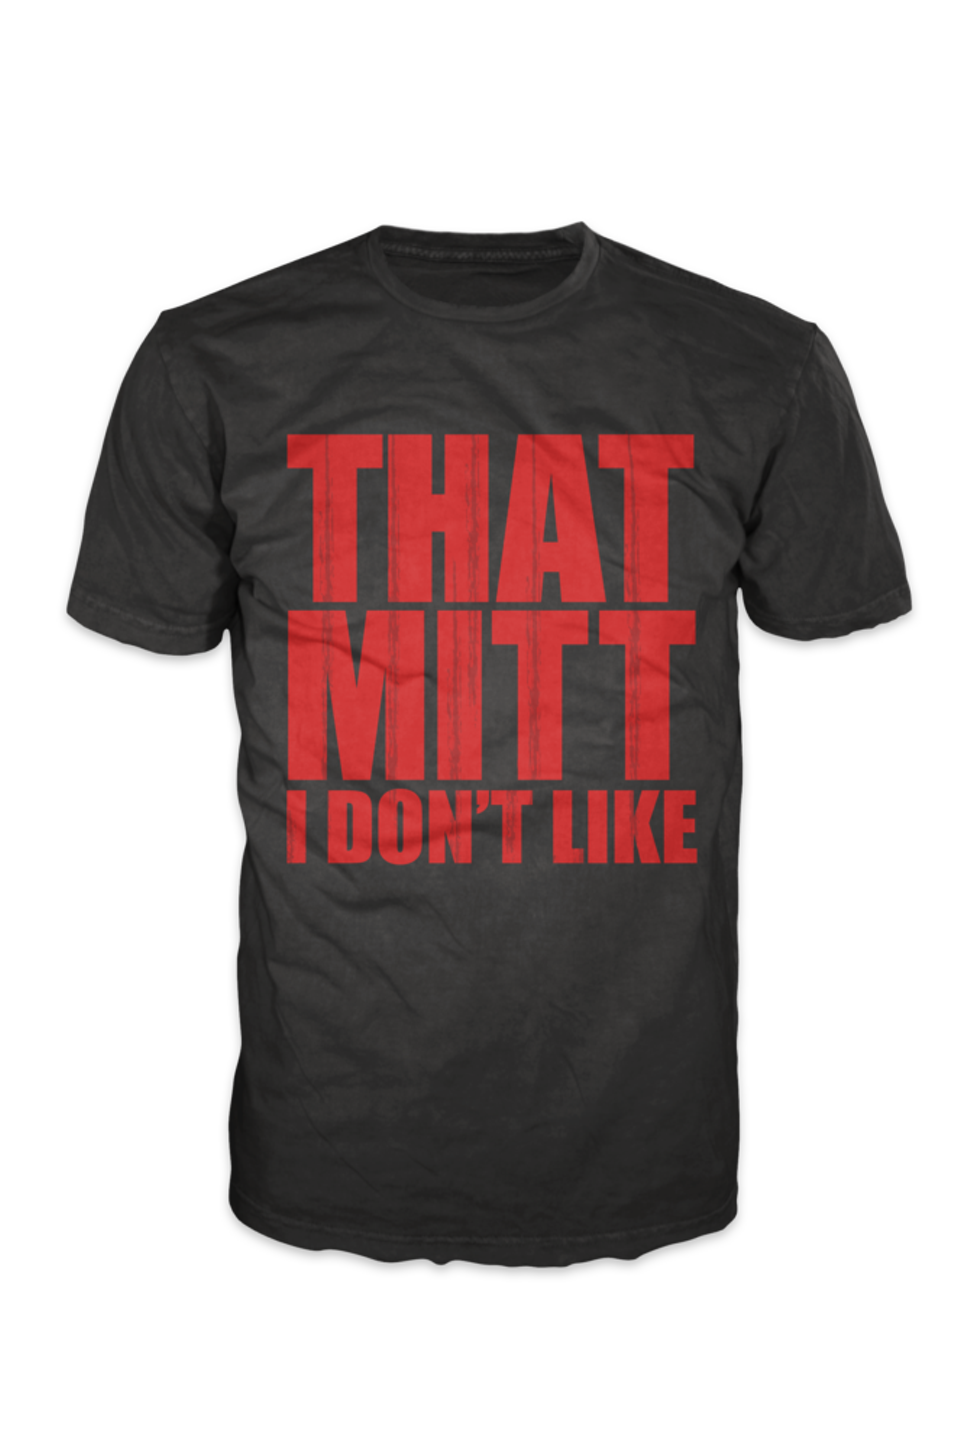 That Mitt I Don't Like Tshirt Black With Red Print - TshirtNow.net